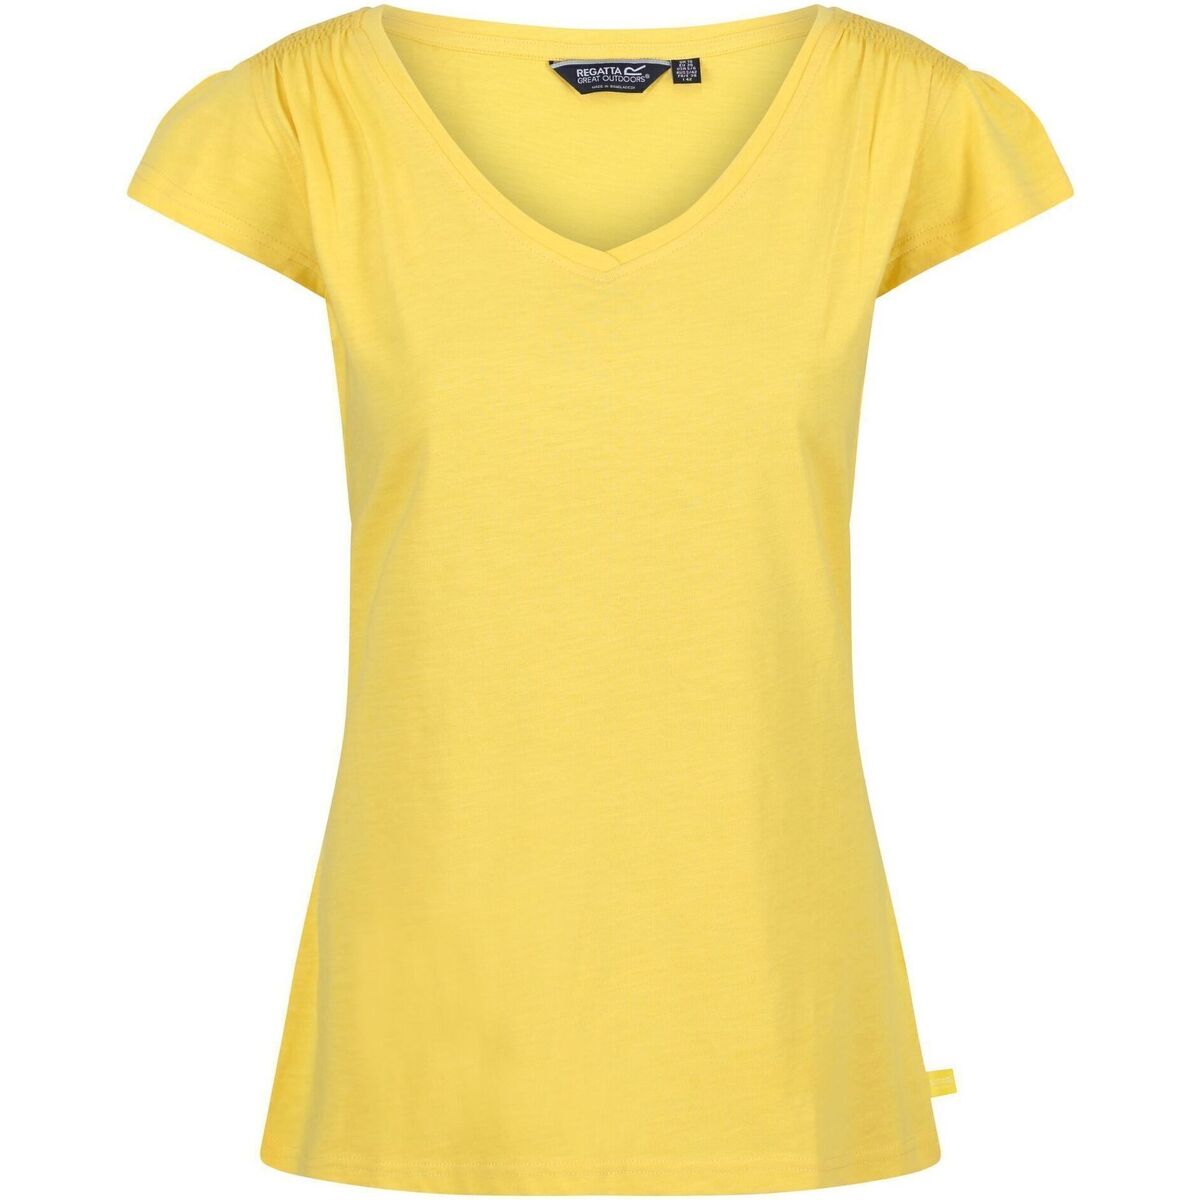 Vêtements Femme T-shirts manches longues Regatta RG6627 Multicolore